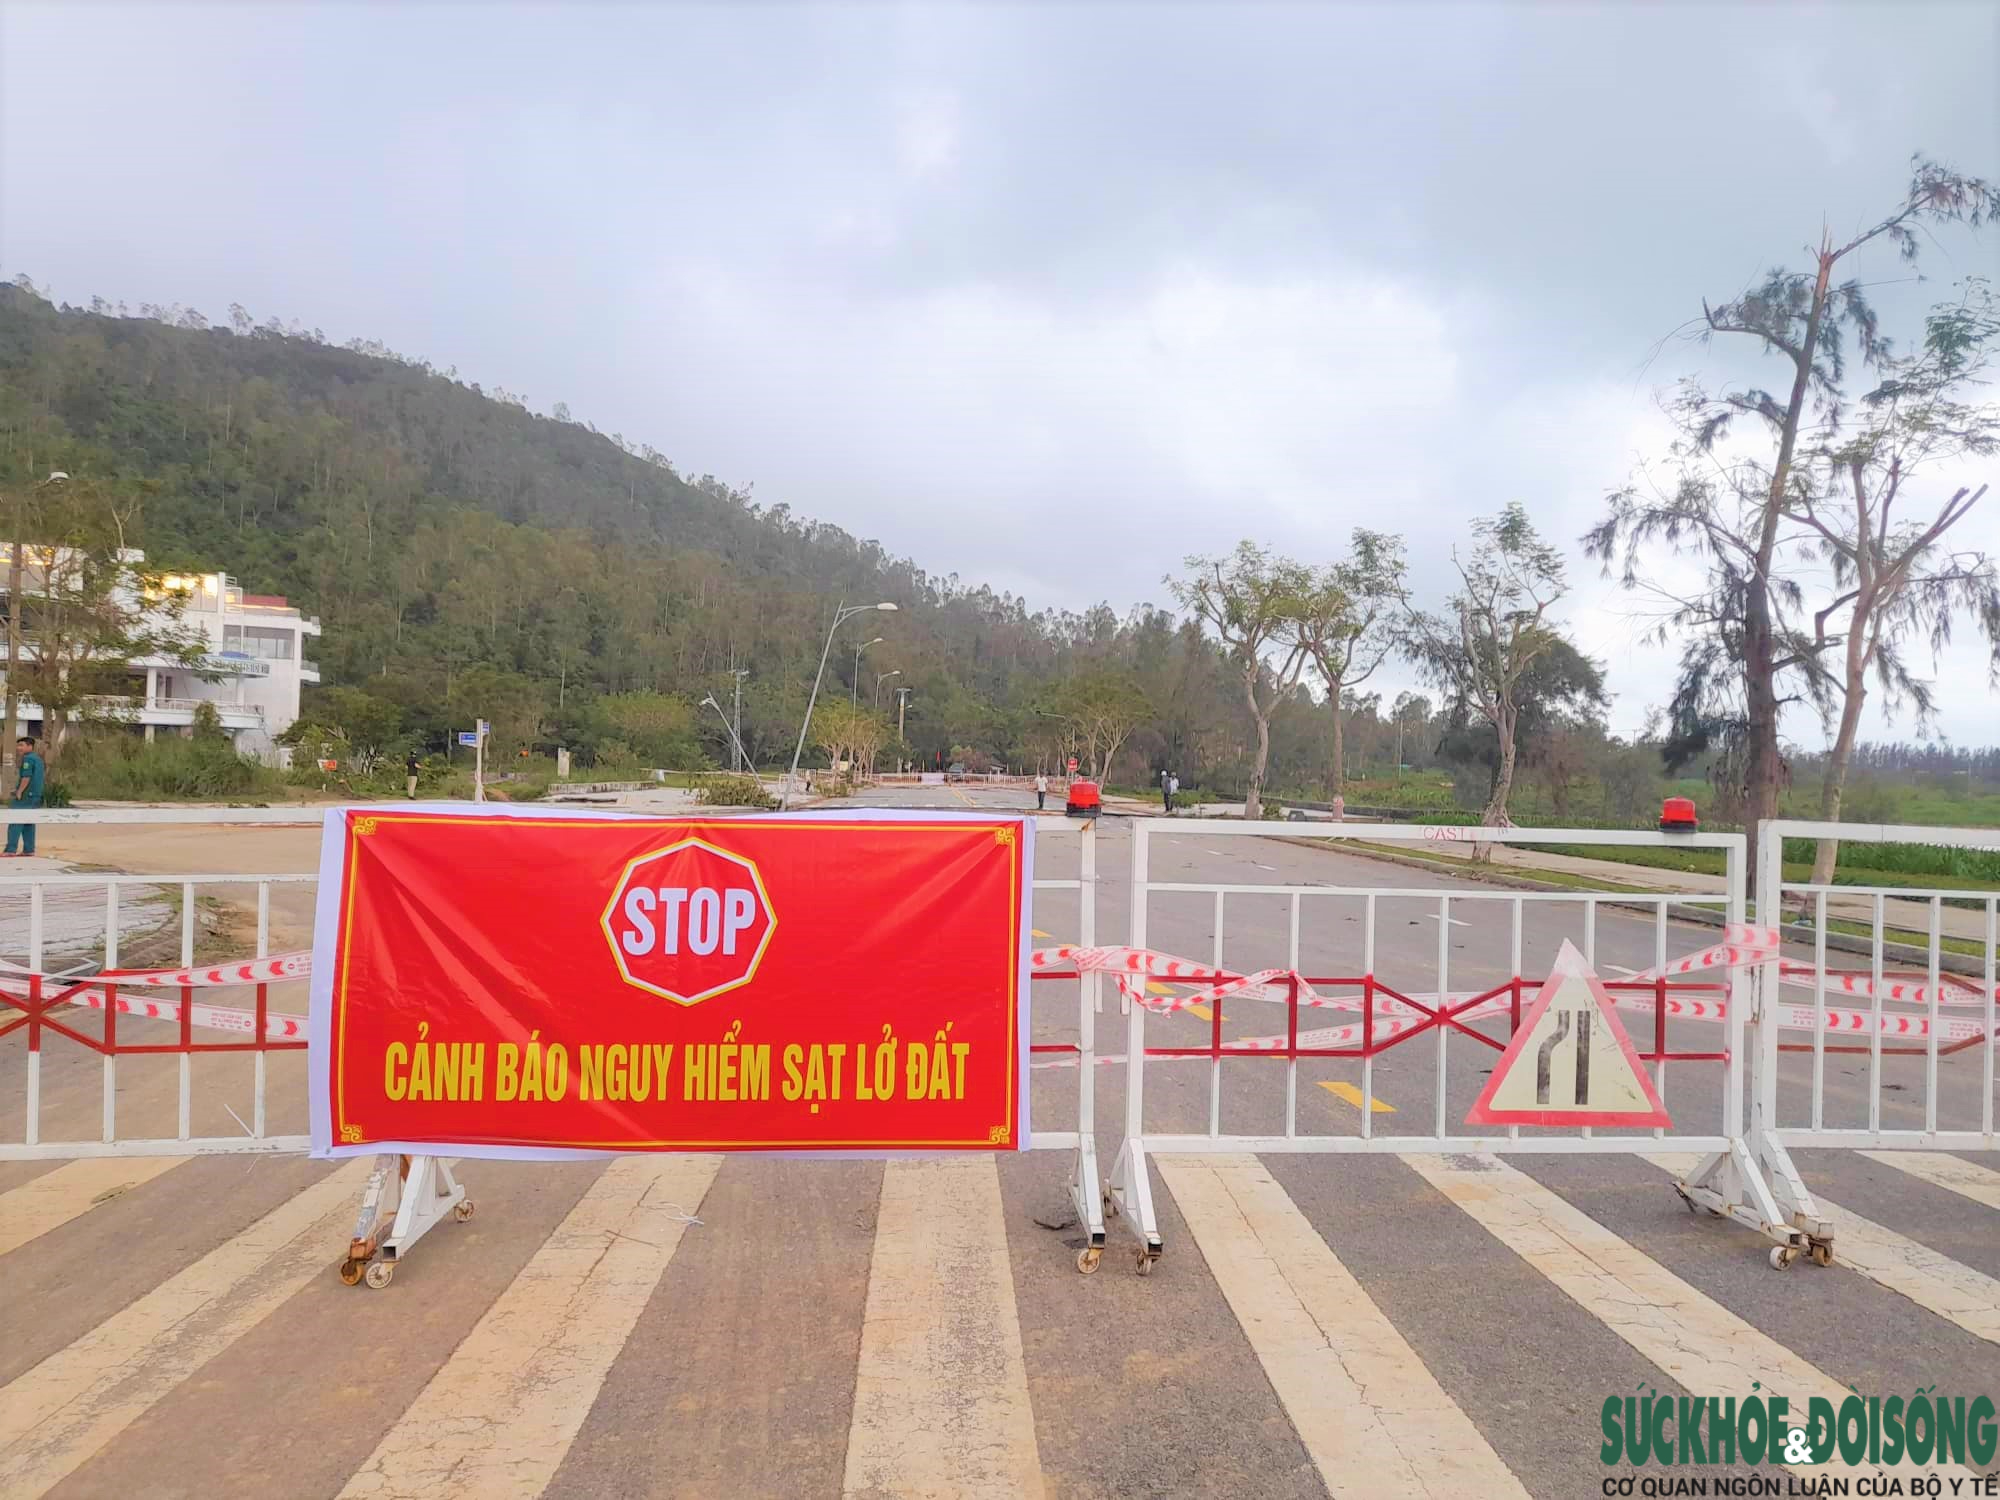 Đường dẫn lên bán đảo Sơn Trà đã được dựng rào chắn để cảnh báo nguy hiểm sạt lở đất. 